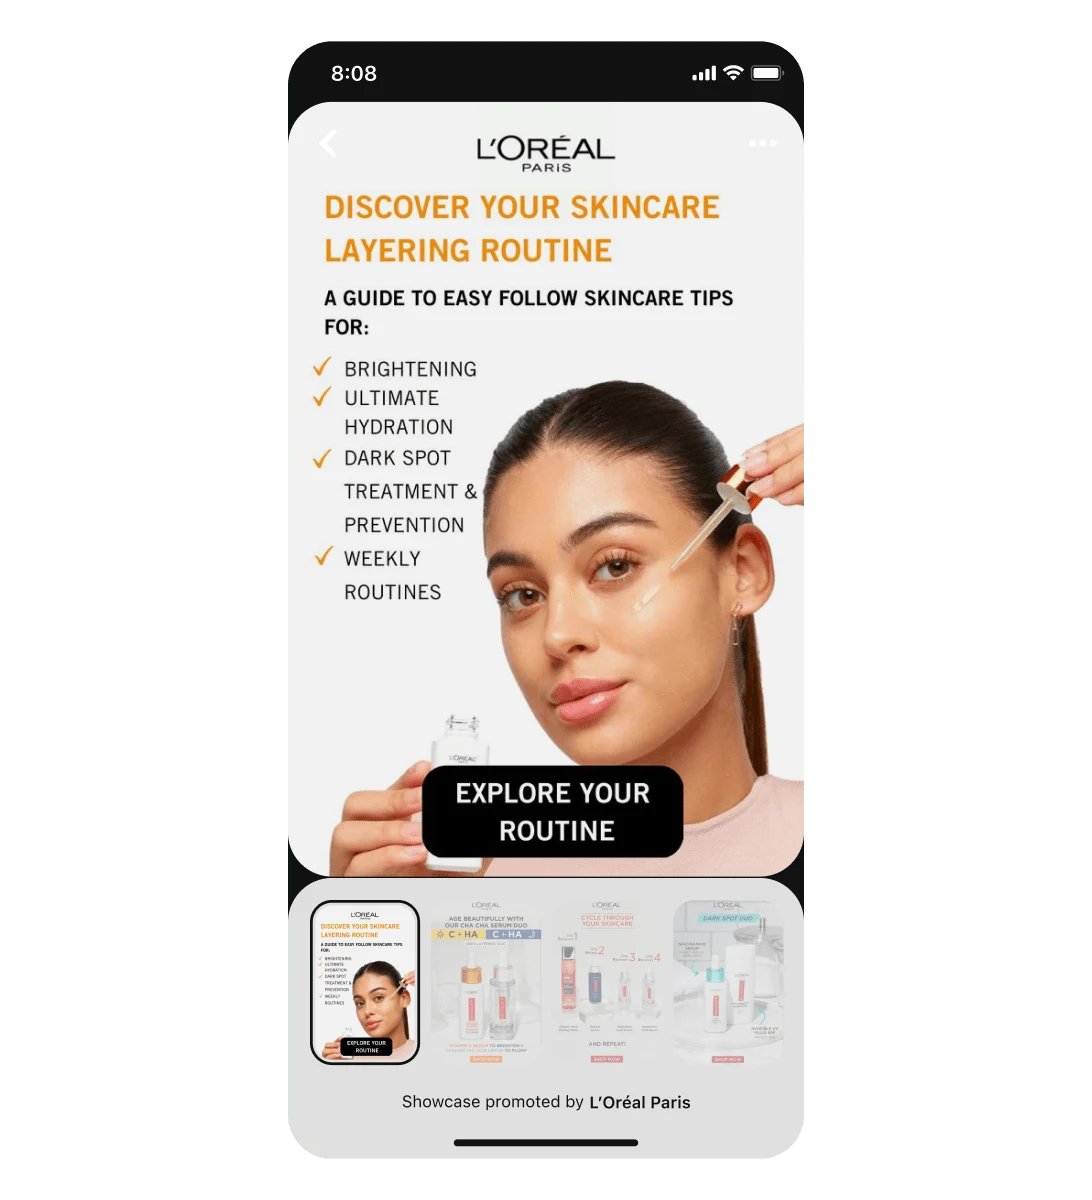 Екран мобільного пристрою з оголошенням-вітриною L'Oreal, на якому зображено жінку лати�ноамериканського походження, що користується сироваткою для обличчя. Під основним піном розміщено три картки, які можна гортати.